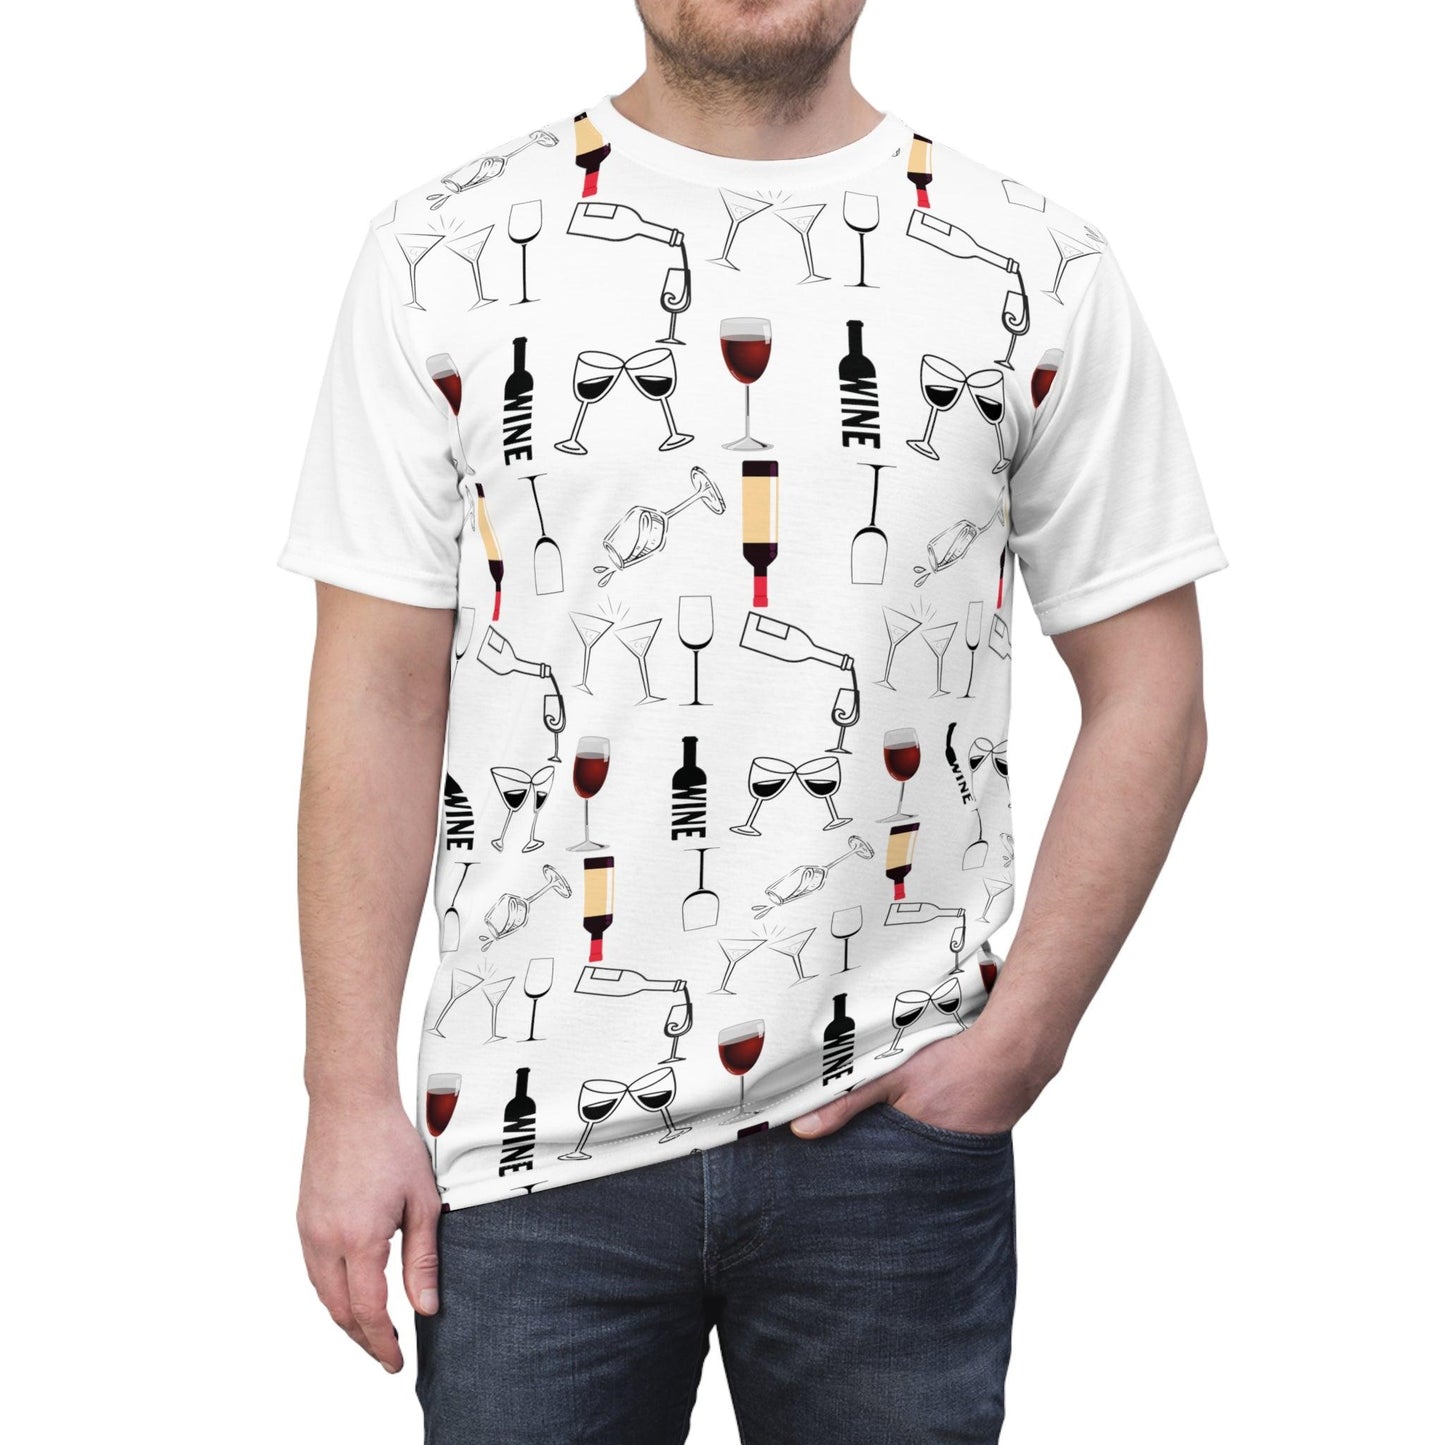 Wine shirt, wine shirt for women, wine shirt Men, wine shirts for men, Wine shirts funny